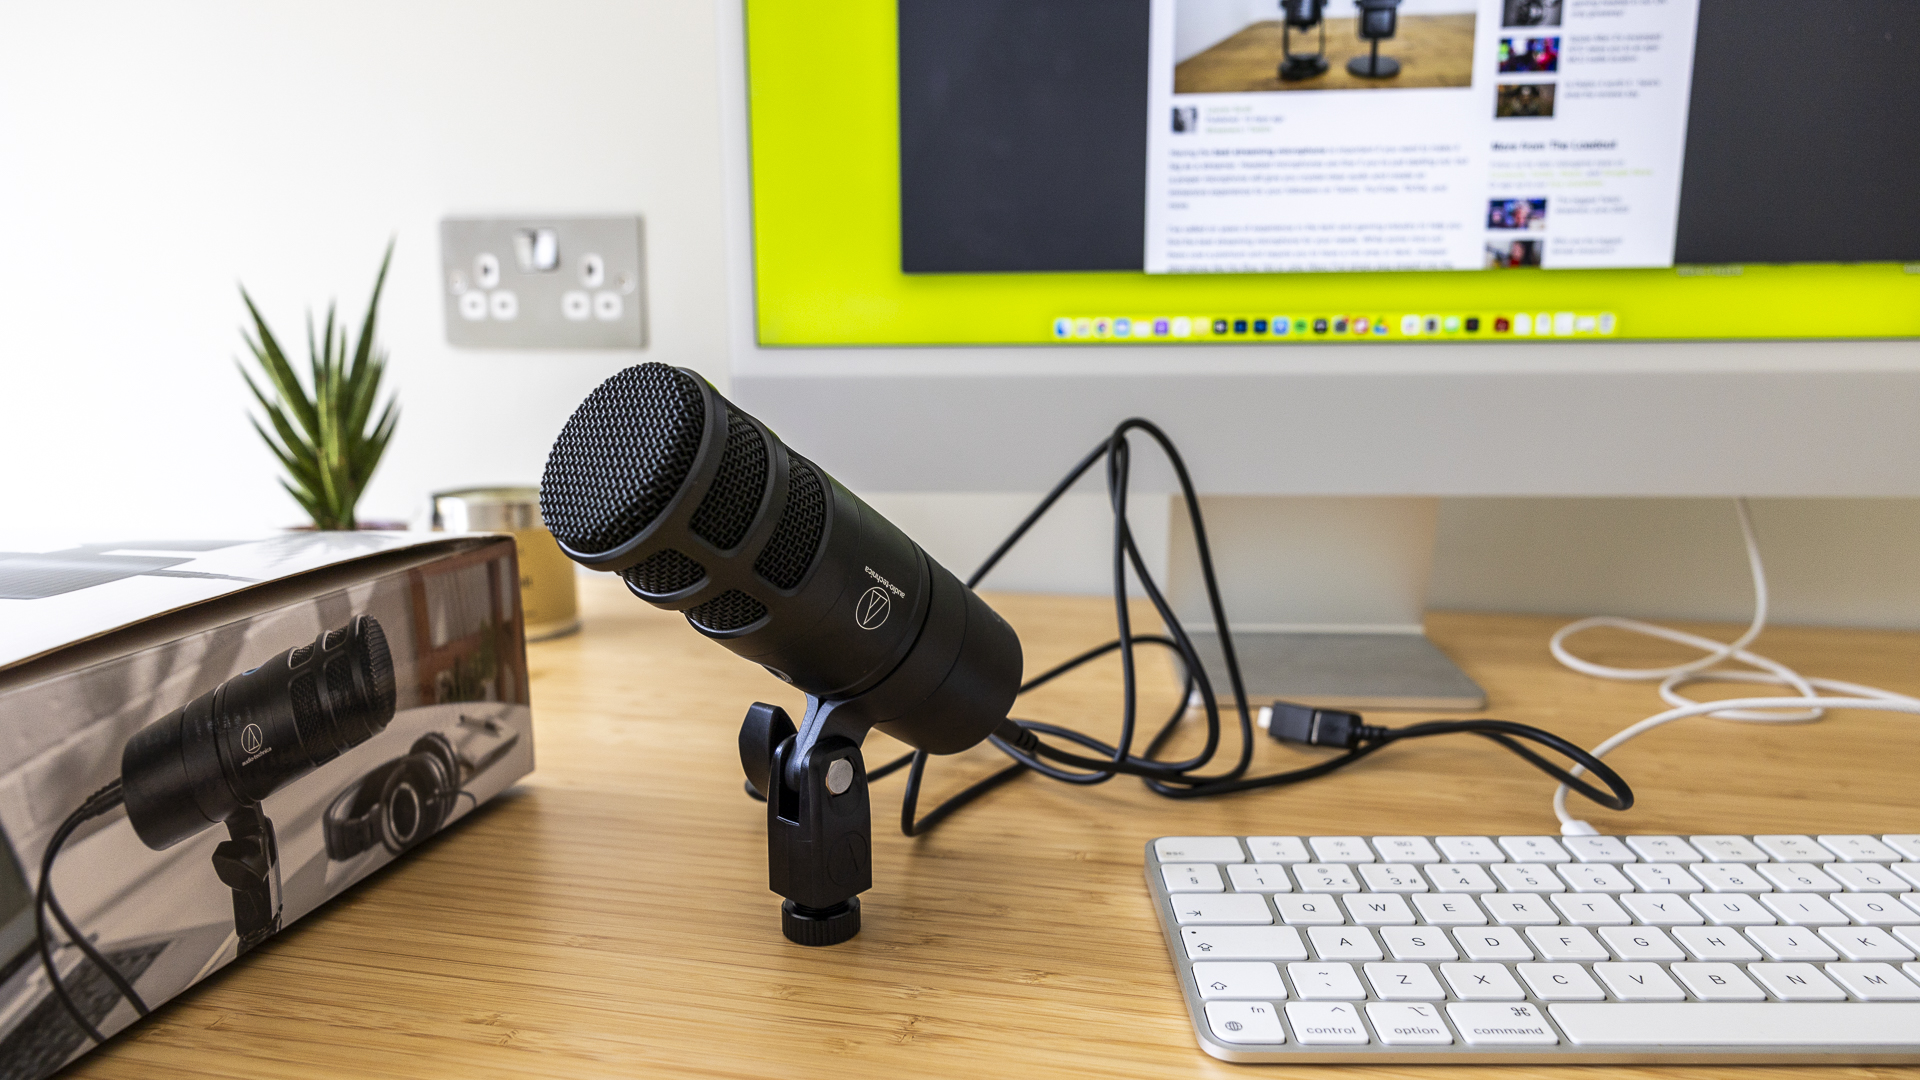 Birisinin masasında, bir kutunun ve klavyenin yanında bulunan mikrofonu gösteren Audio Technica inceleme görseli.